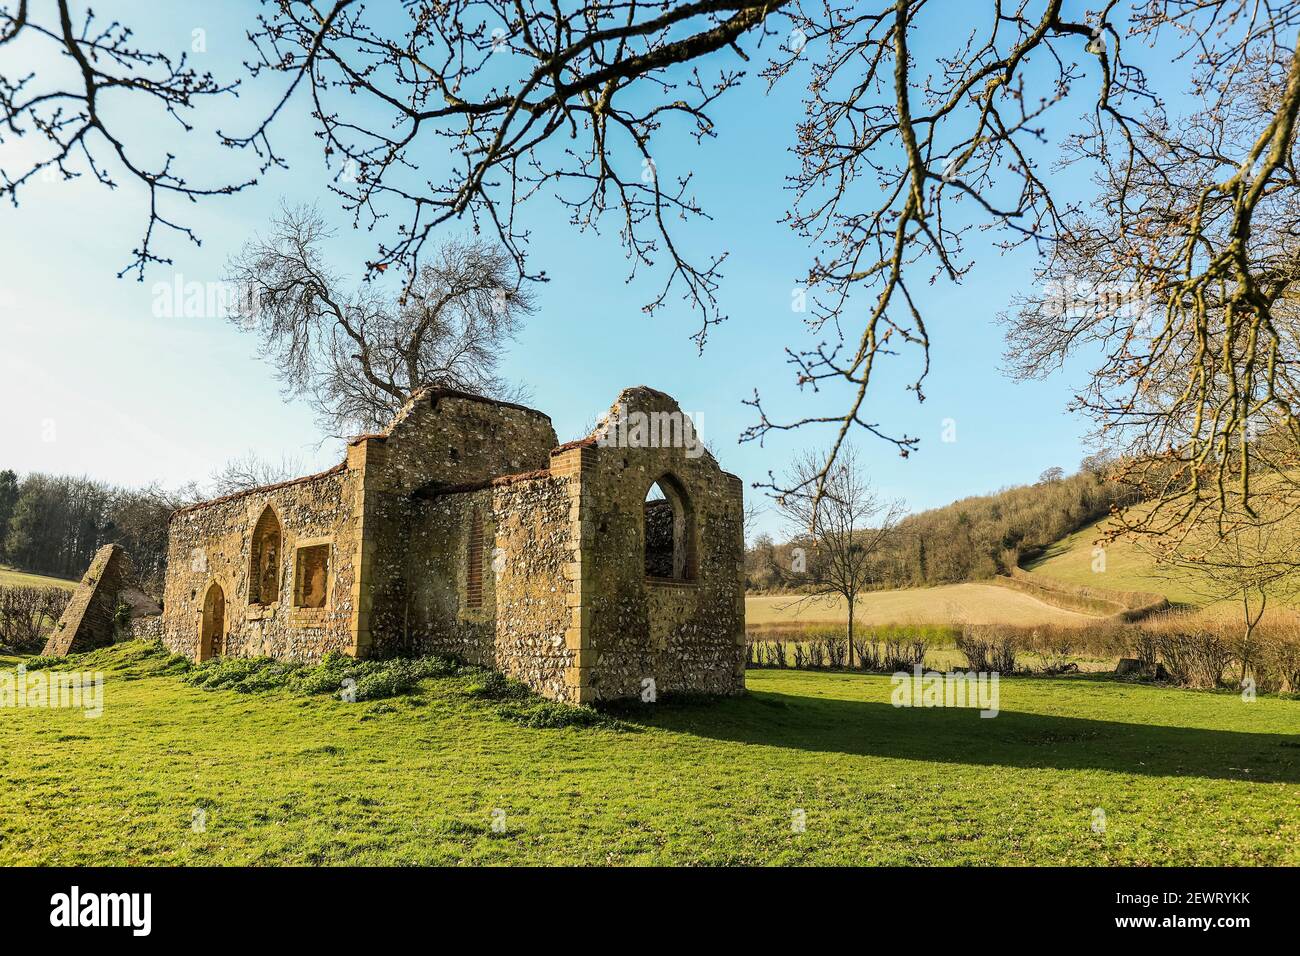 Ruine der St. James' Kirche in der Nähe von Bix, einst zentral zu Bix Brand, dem verlorenen mittelalterlichen Dorf, Bix, Henley-on-Thames, Oxfordshire, England, Vereinigtes Königreich Stockfoto